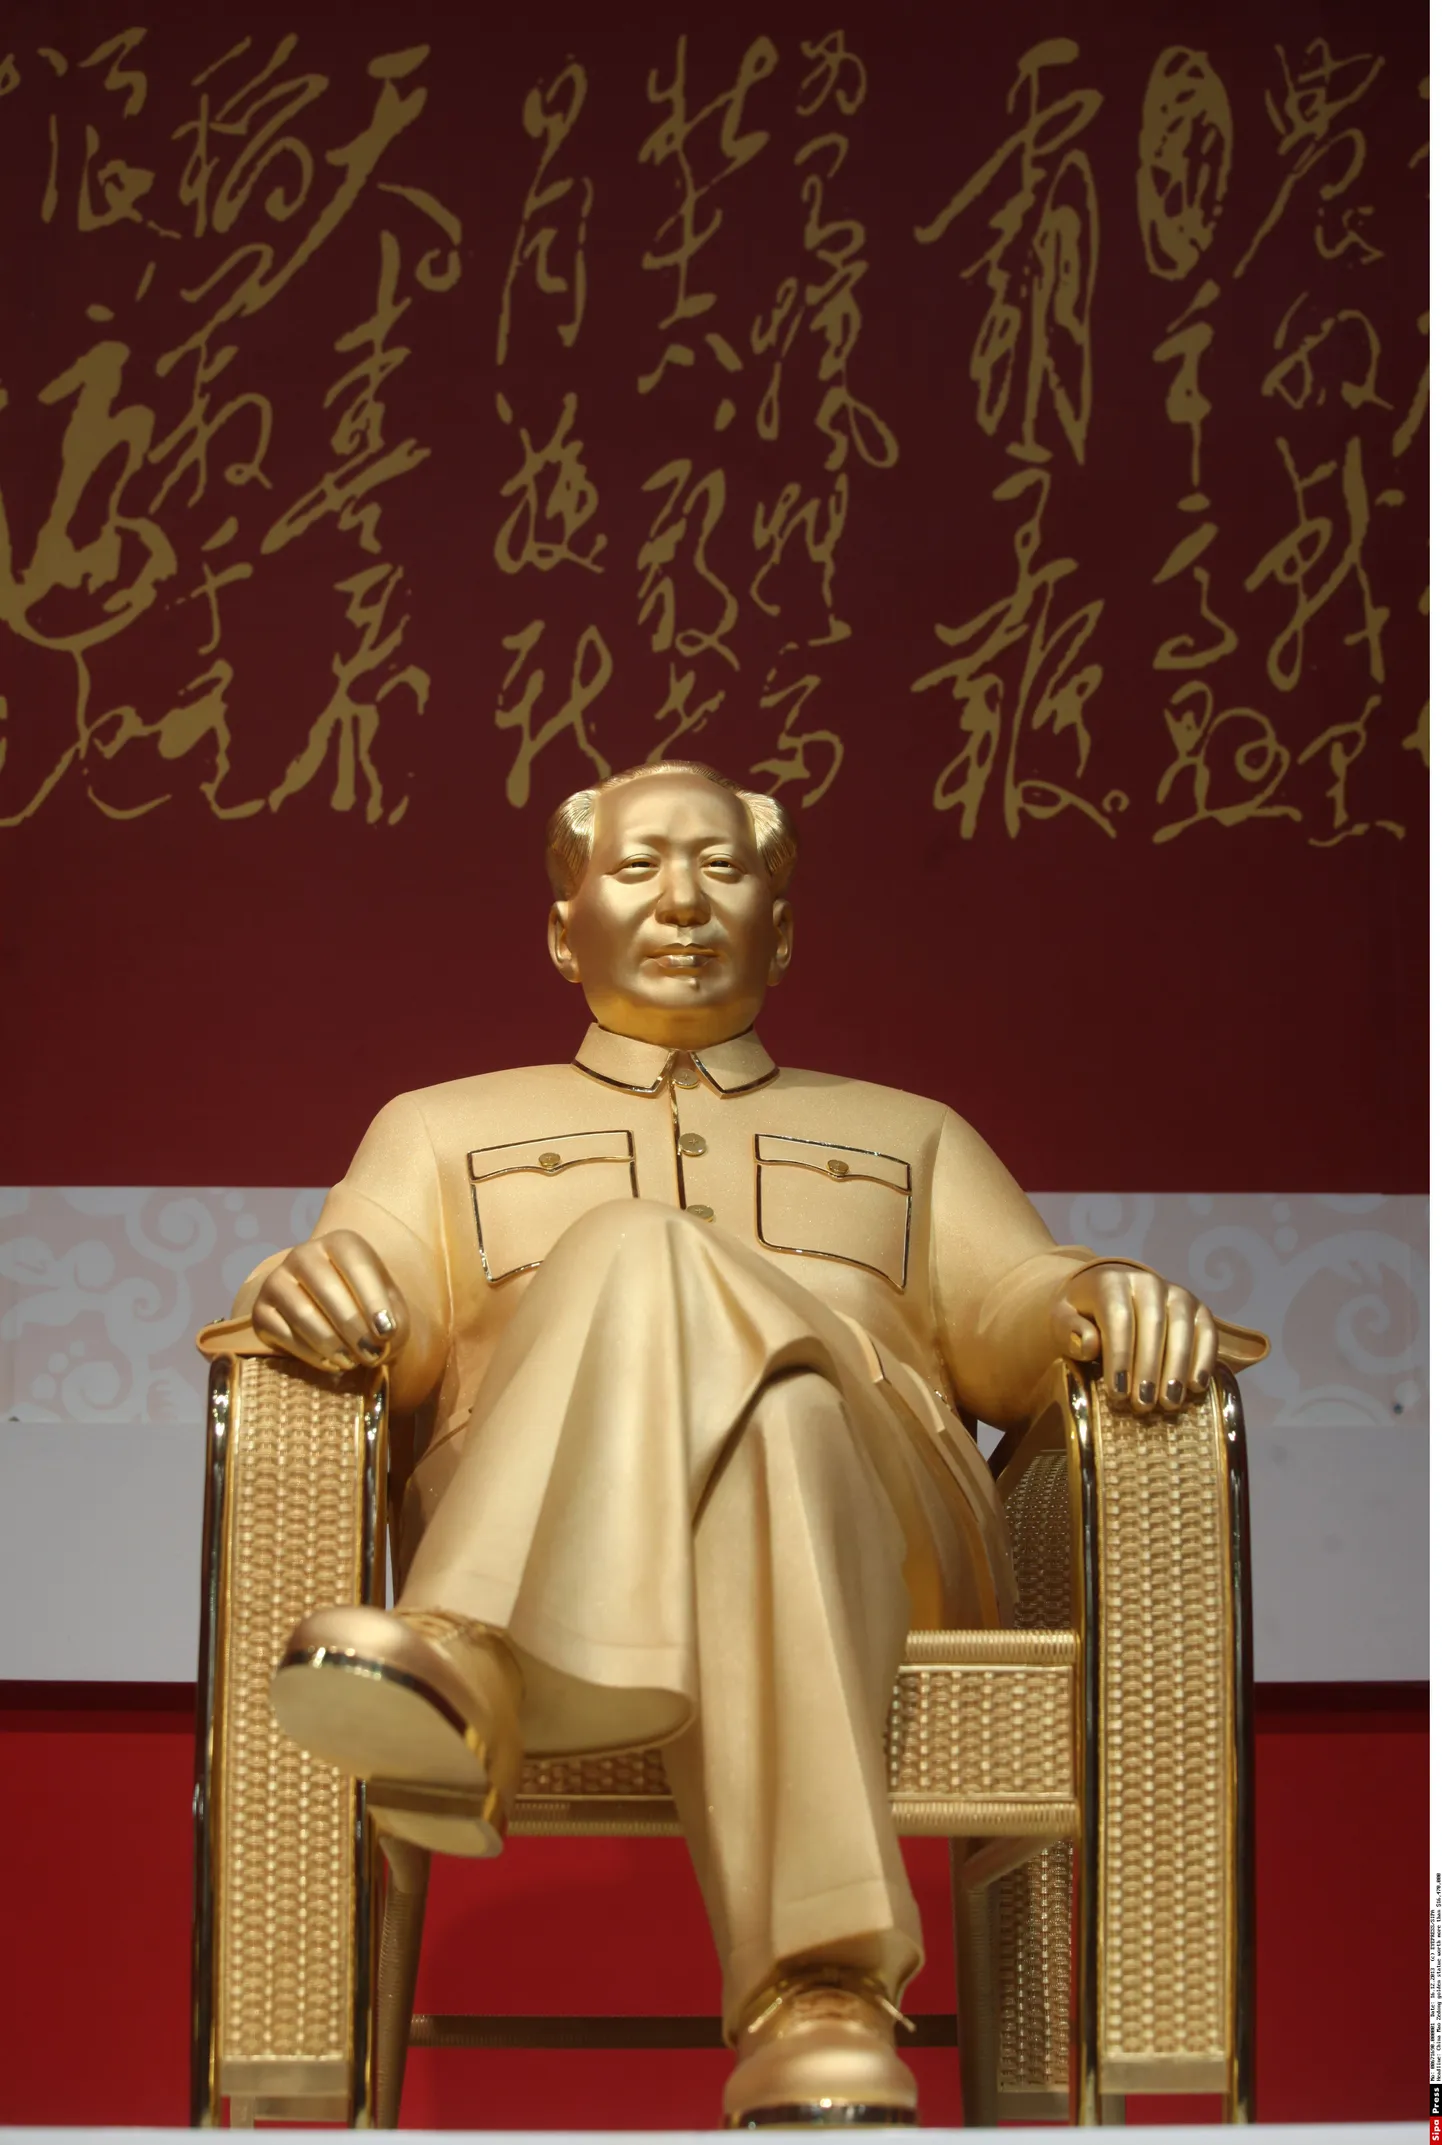 Hiina Kommunistliku Partei kunagise juhi Mao Zeongi kullast kuju Shenzhenis toimunud näitusel.